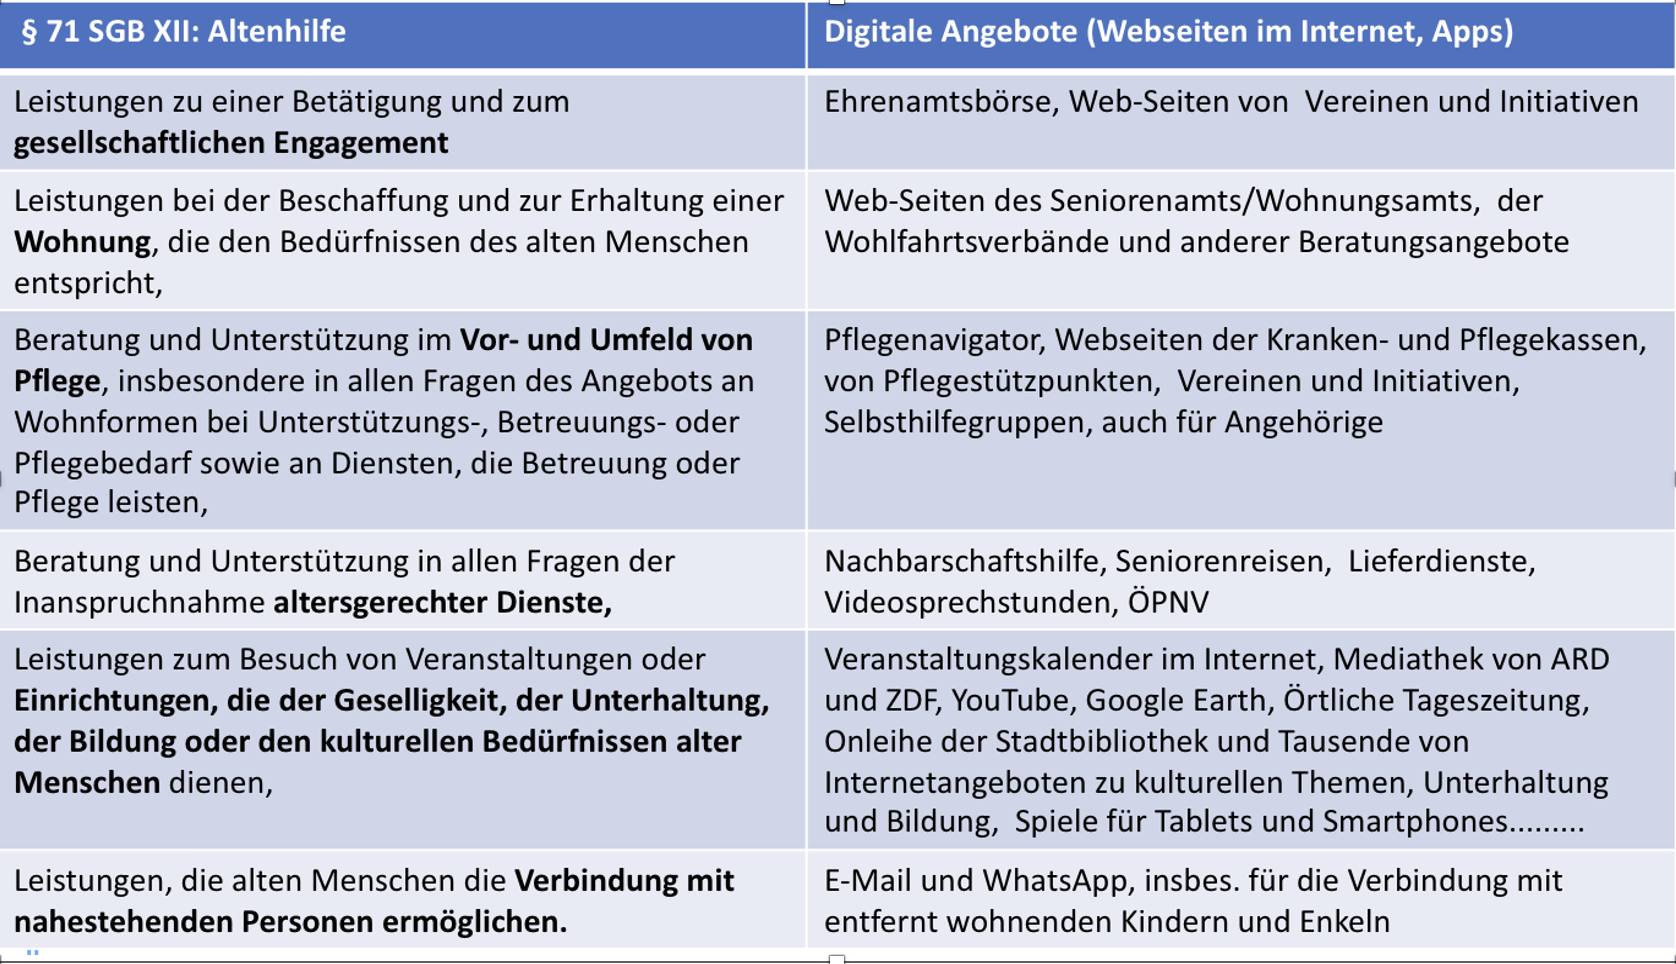 Text-Tabelle, die auf der linken Seite die sechs im Sozialgesetzbuch vorgegebenen Zeile der Altenhilfe auflistet und rechts daneben die aktuellen digitalen Äquivalente.